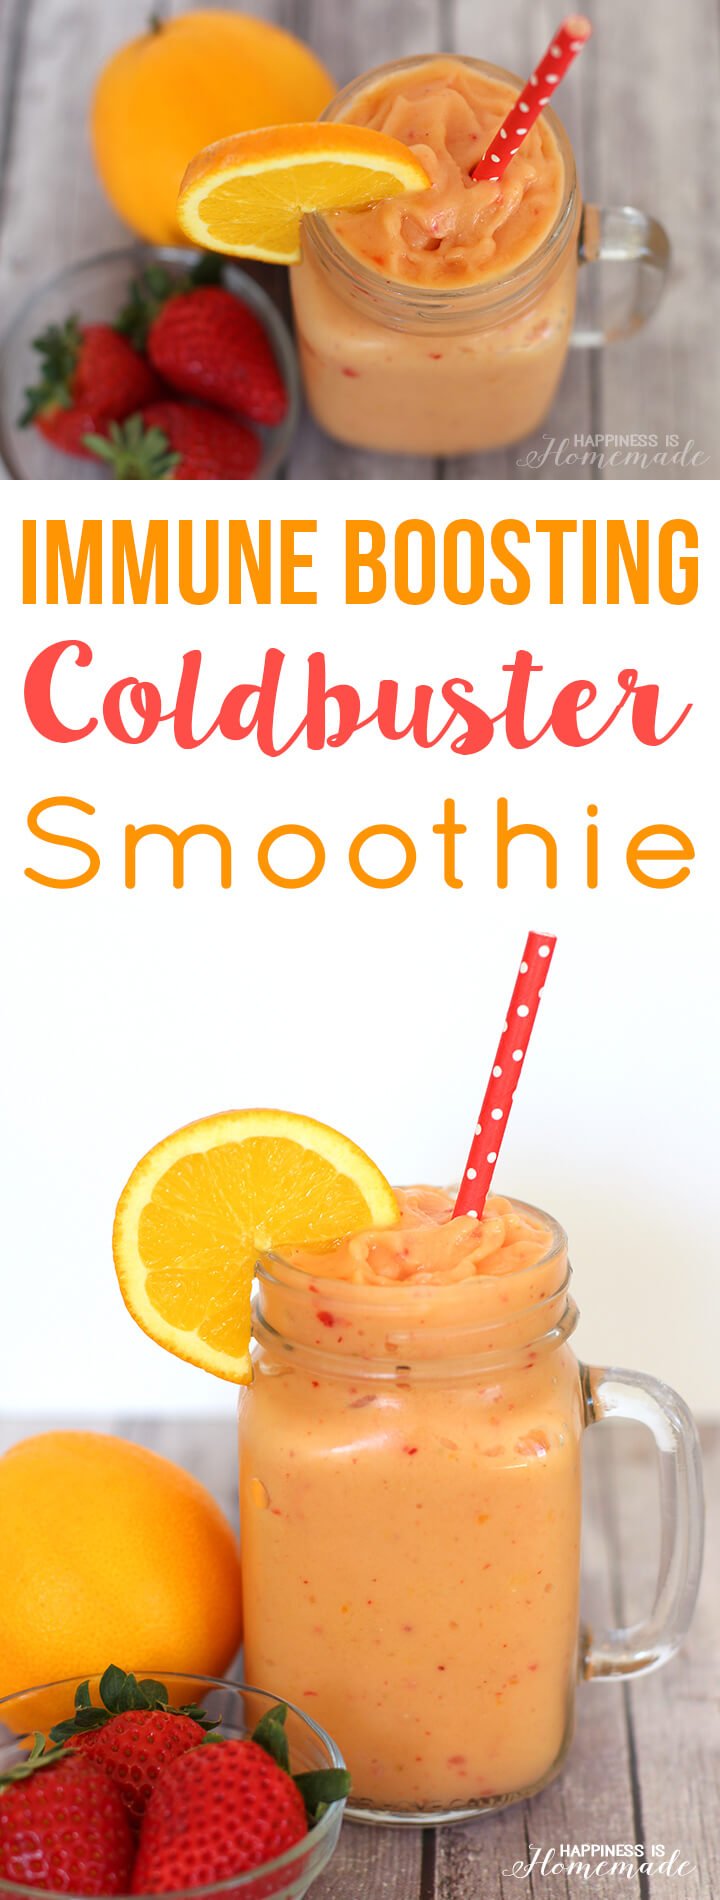 Immune Boosting Coldbuster Smoothie Recipe